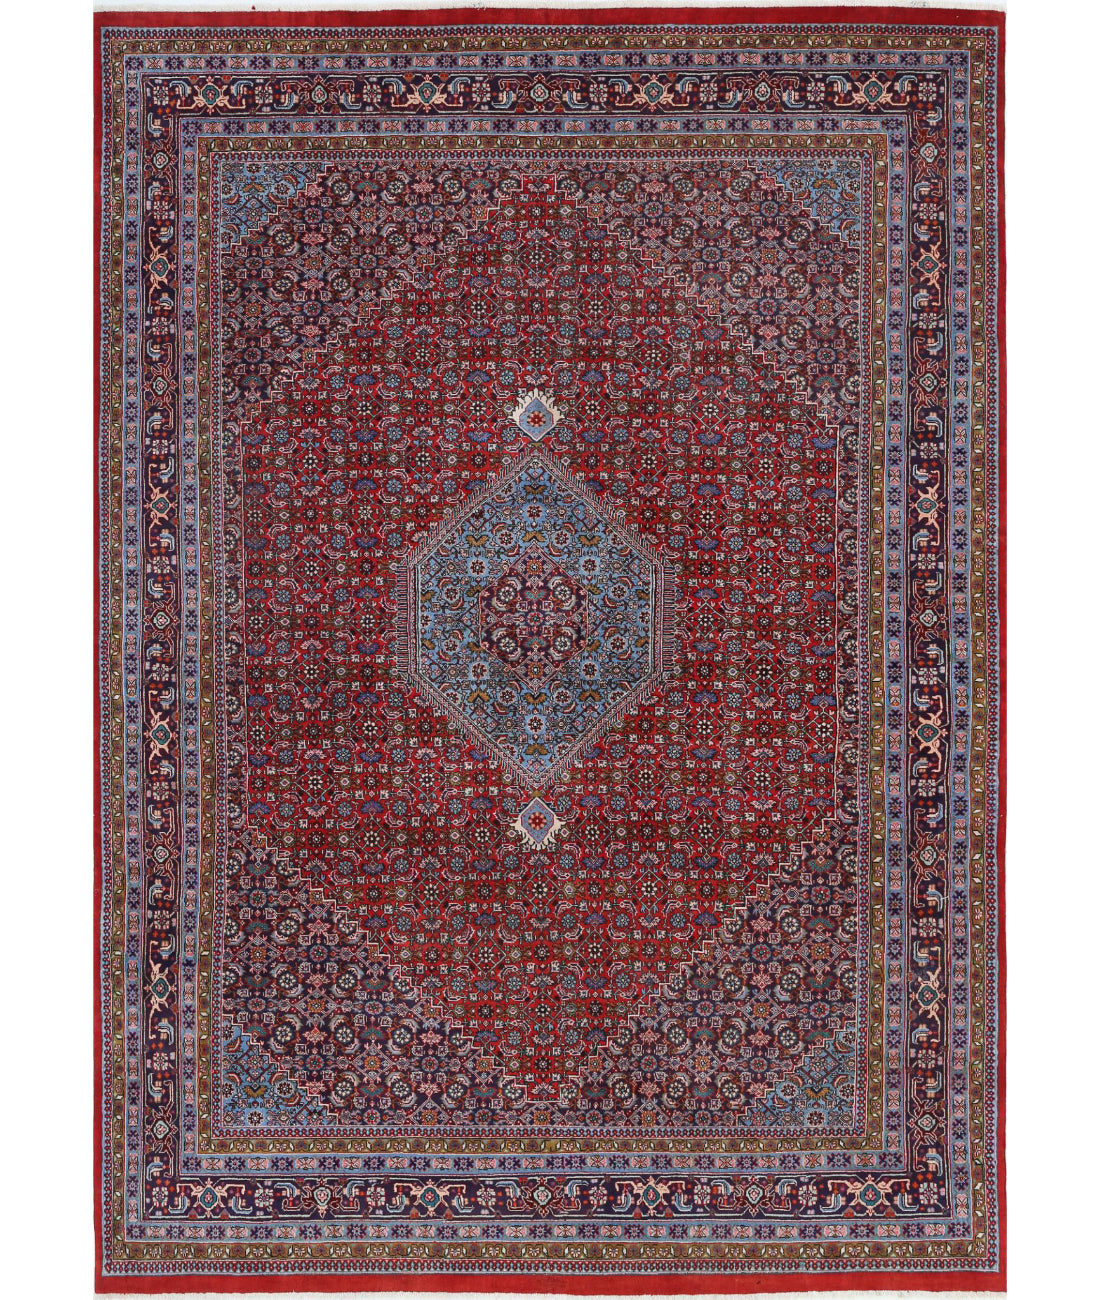 Hand Knotted Persian Bijar Wool Rug - 7'3'' x 10'3'' 7'3'' x 10'3'' (218 X 308) / Red / Blue